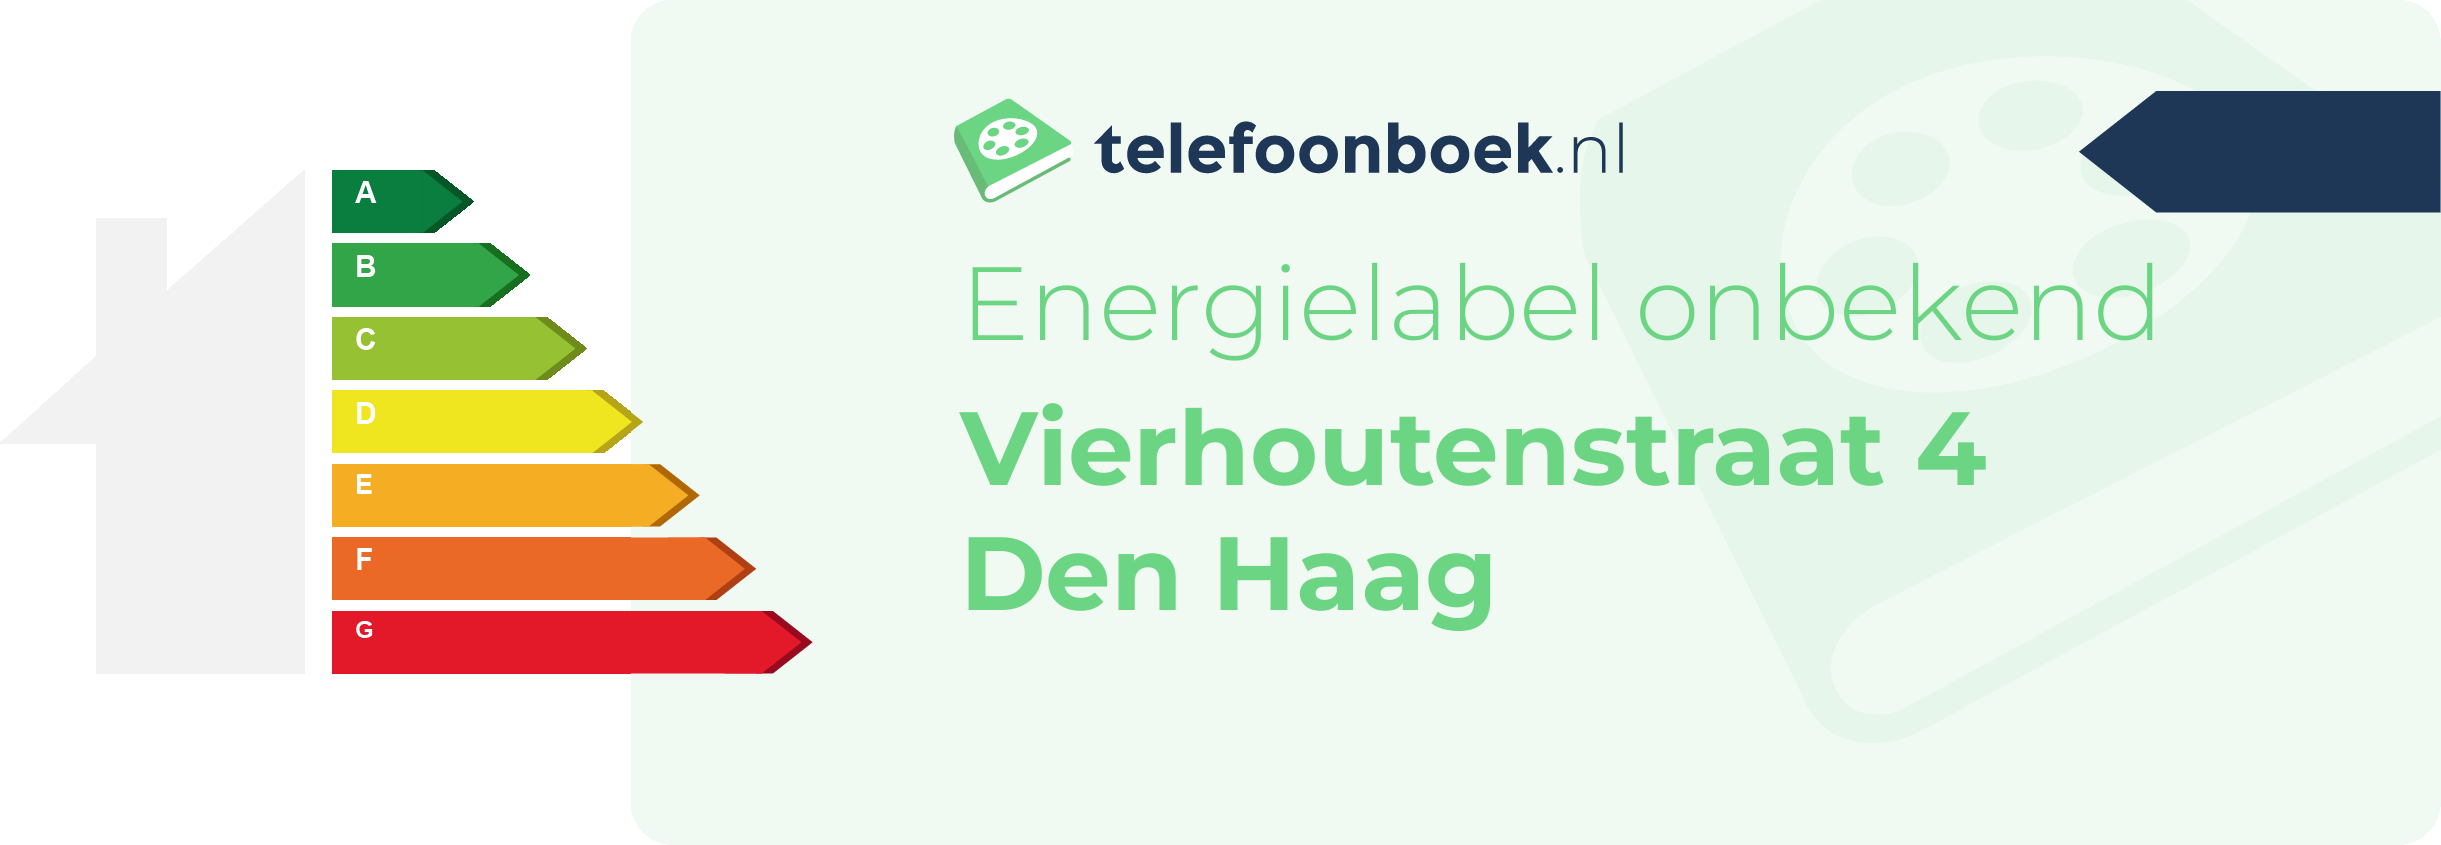 Energielabel Vierhoutenstraat 4 Den Haag